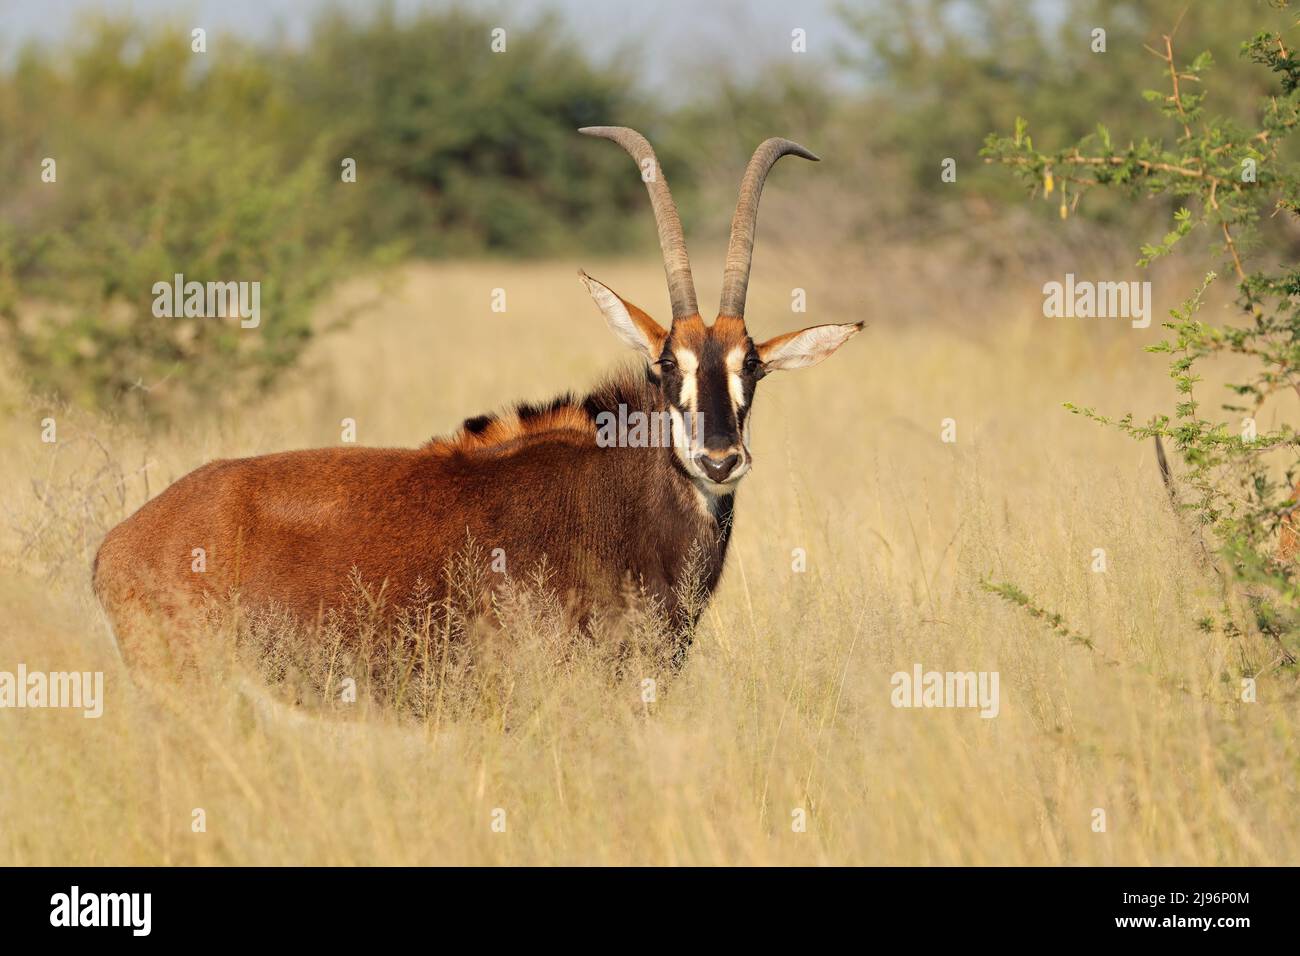 Une antilope gélisable (Hippotragus niger) dans un habitat naturel, Afrique du Sud Banque D'Images